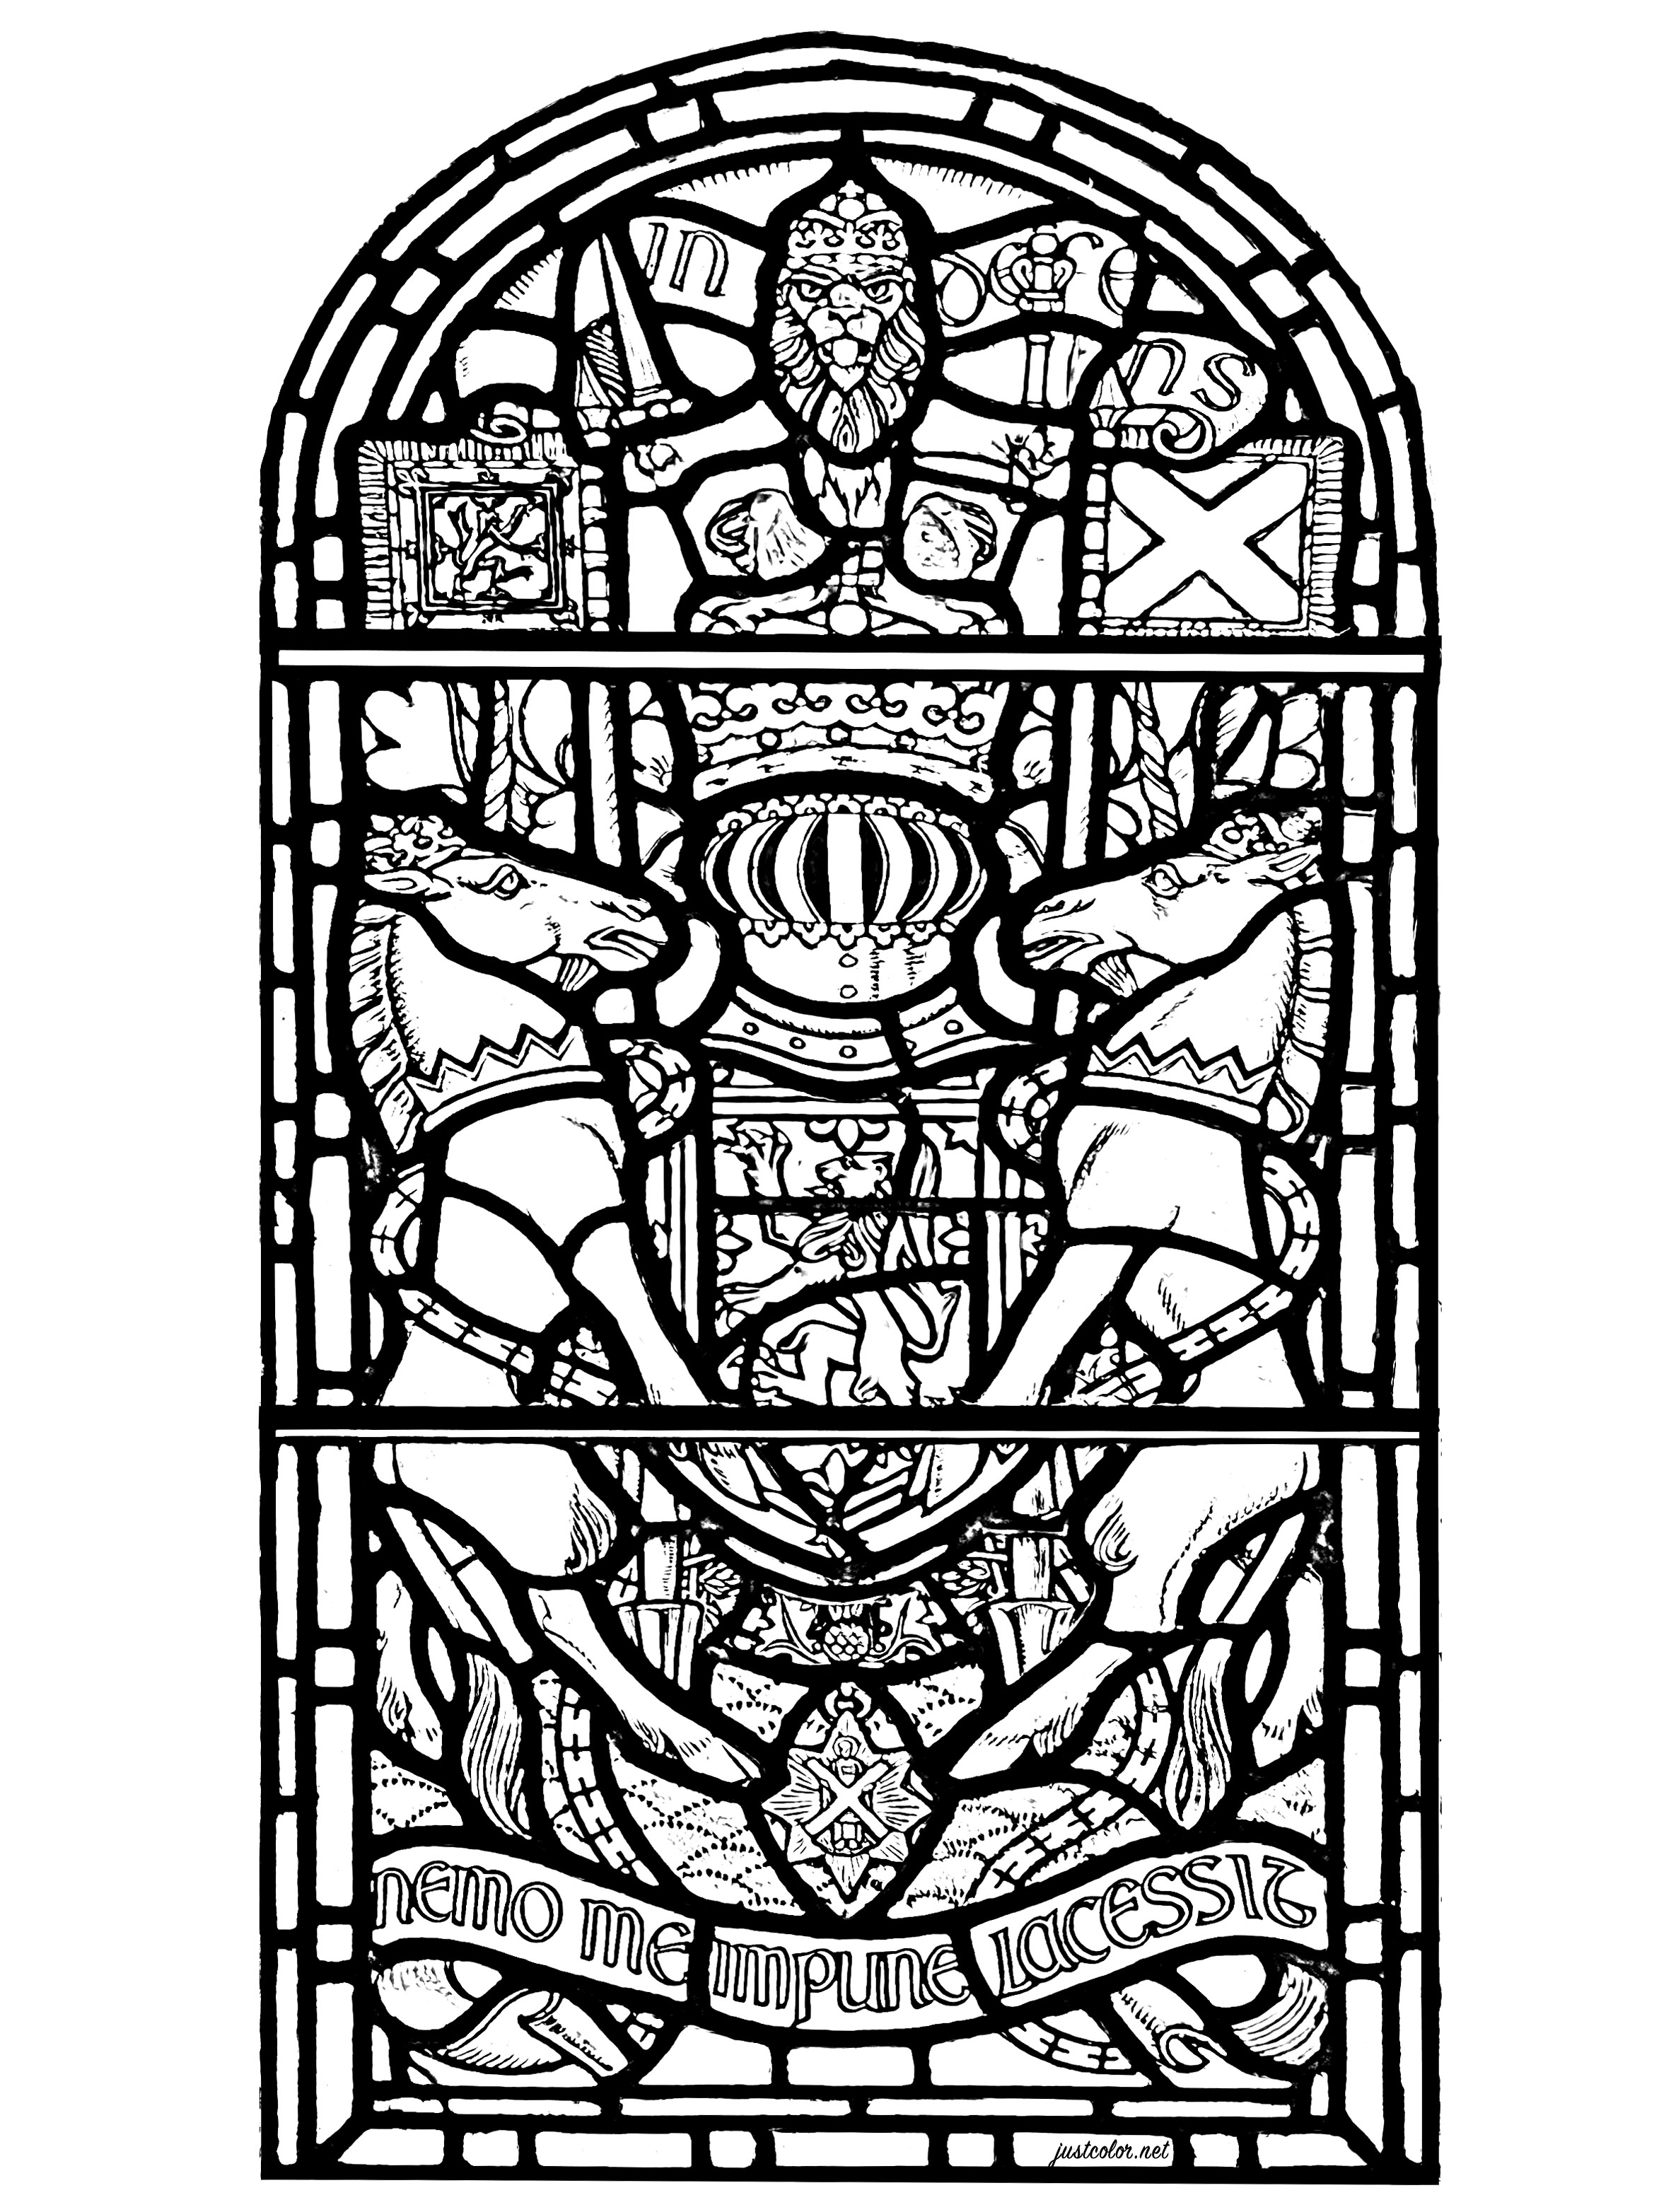 Vitral do Castelo de Edimburgo, Escócia. O vitral apresenta vários símbolos da Escócia, bem como o texto 'Nemo me impune lacessit', que é o lema latino da Ordem do Cardo.Aparece nas armas reais do Reino Unido da Escócia.Significa 'Ninguém me ofende impunemente'.